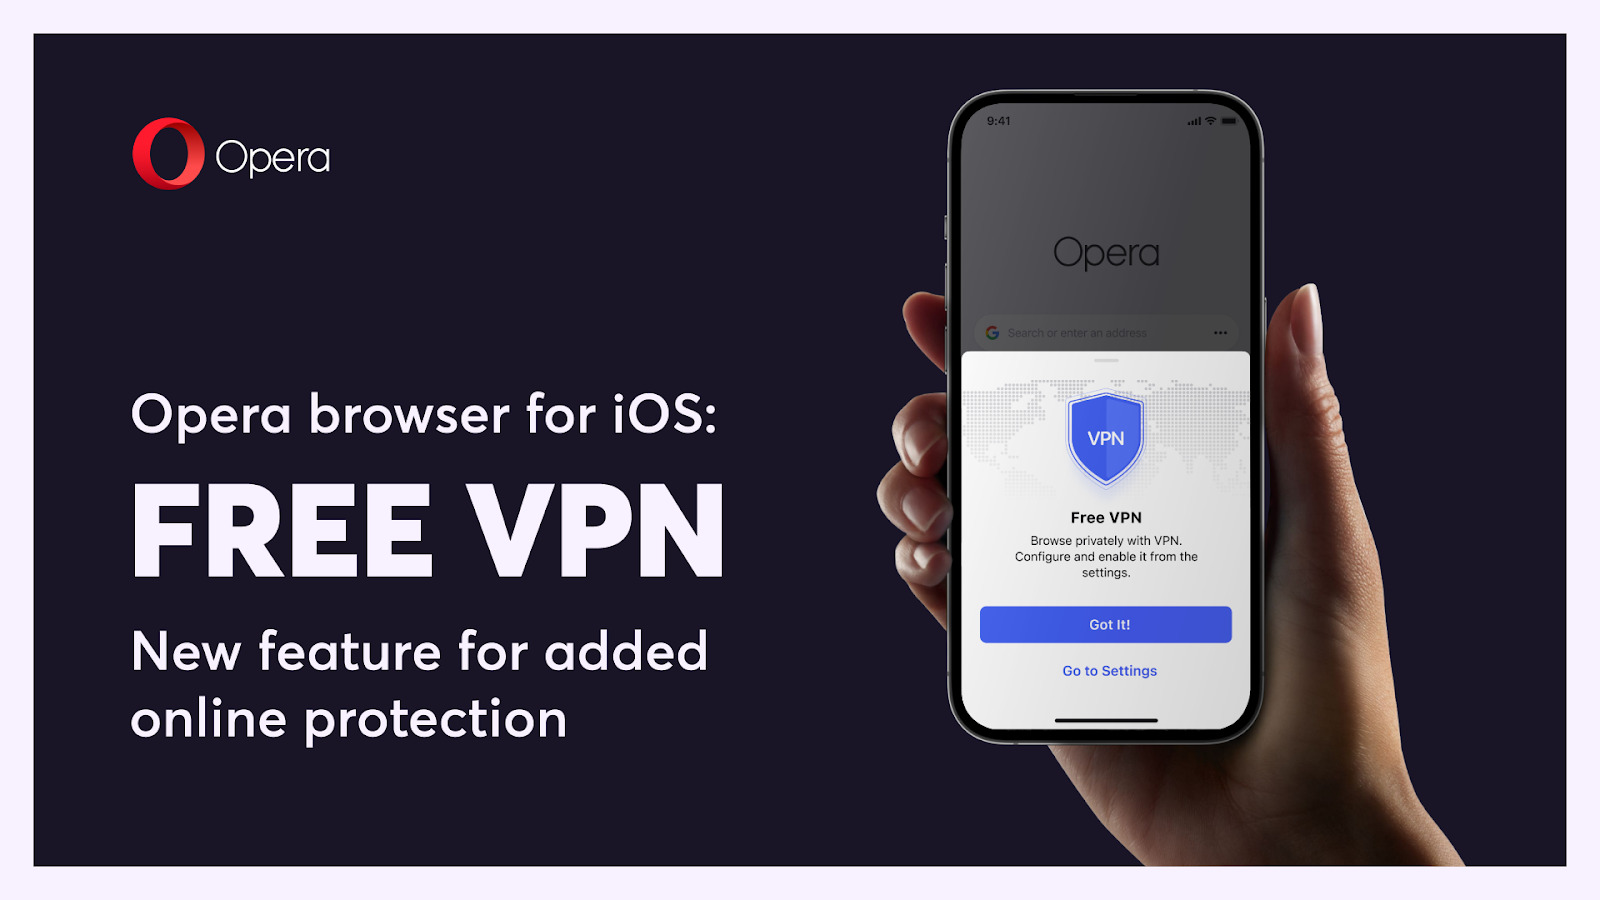 Opera Kini Menawarkan Akses VPN Percuma Untuk Pengguna iPhone